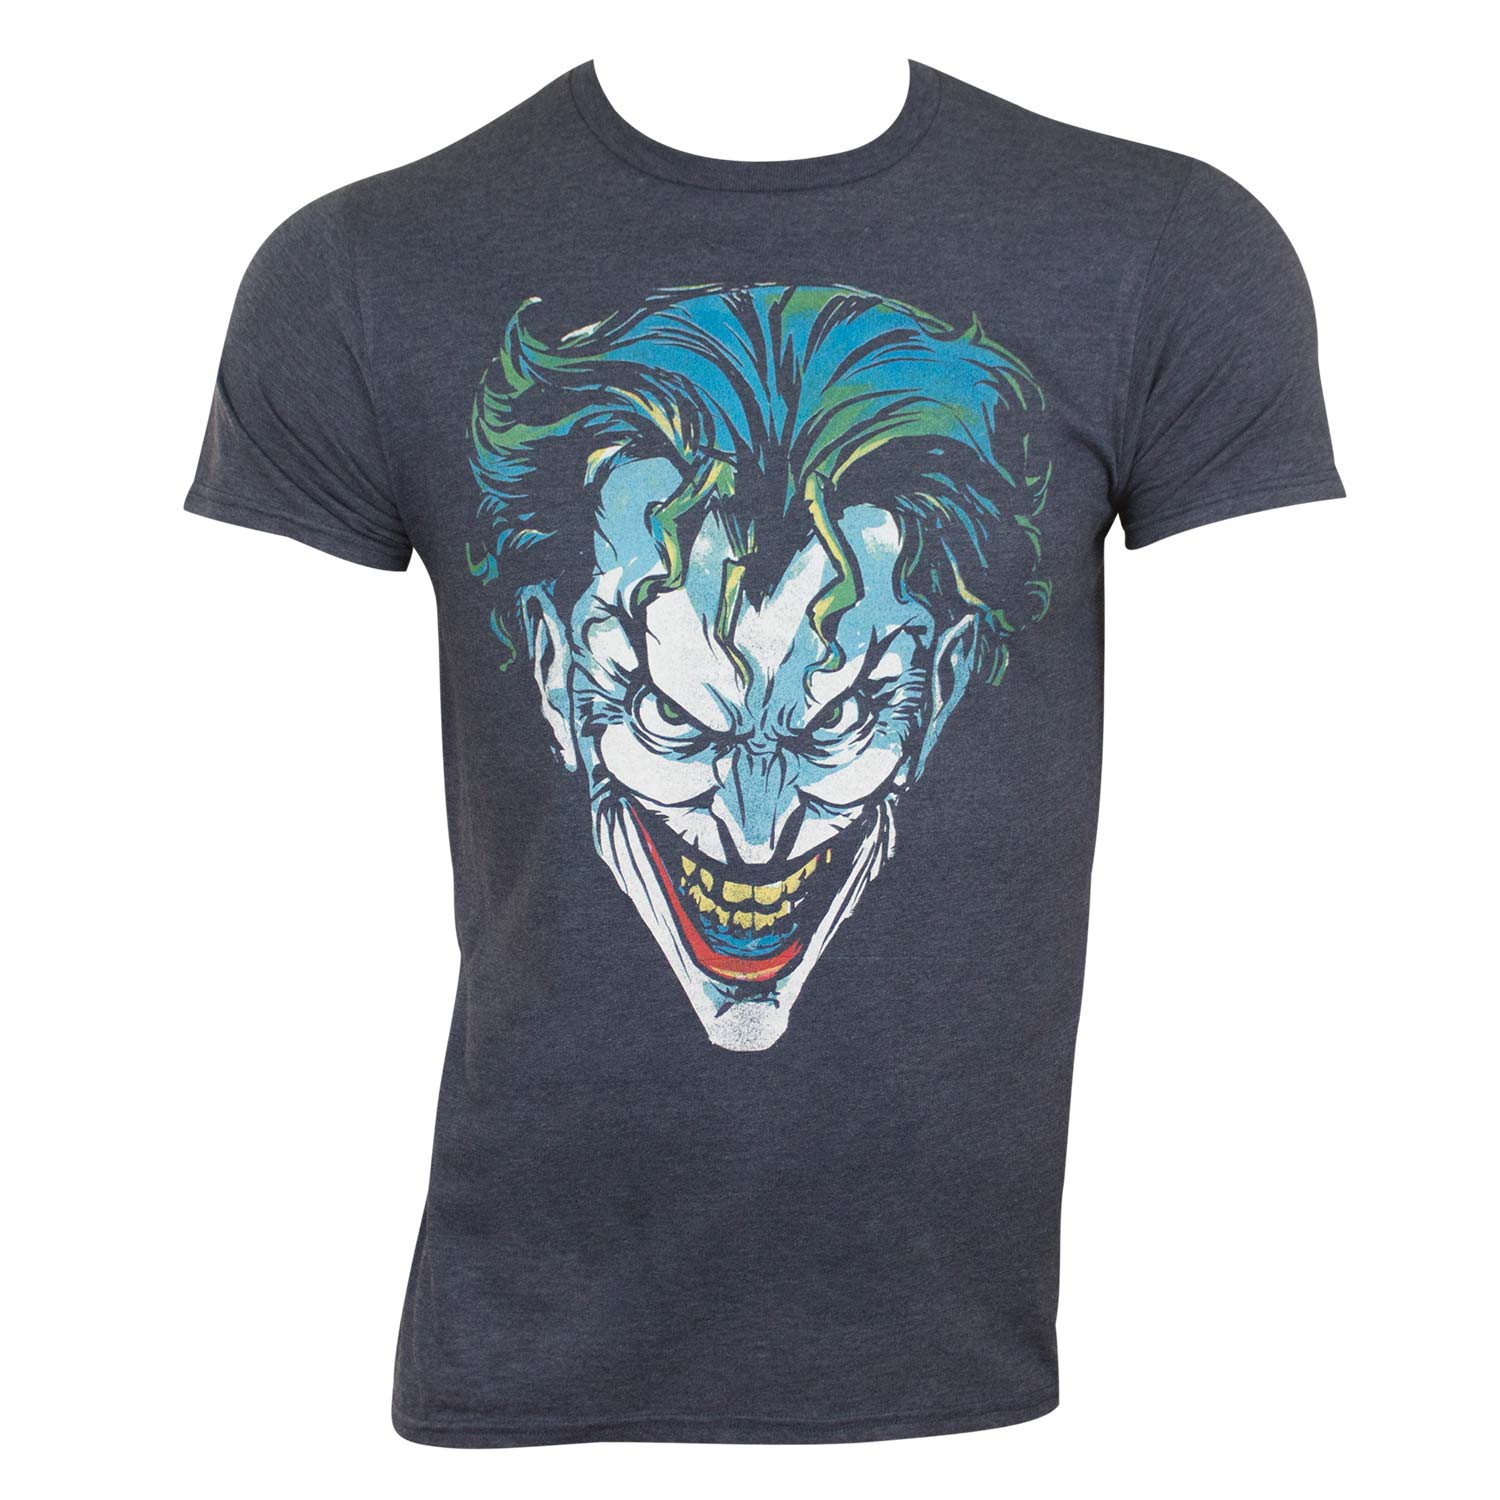 Joker Scowl Tee Shirt